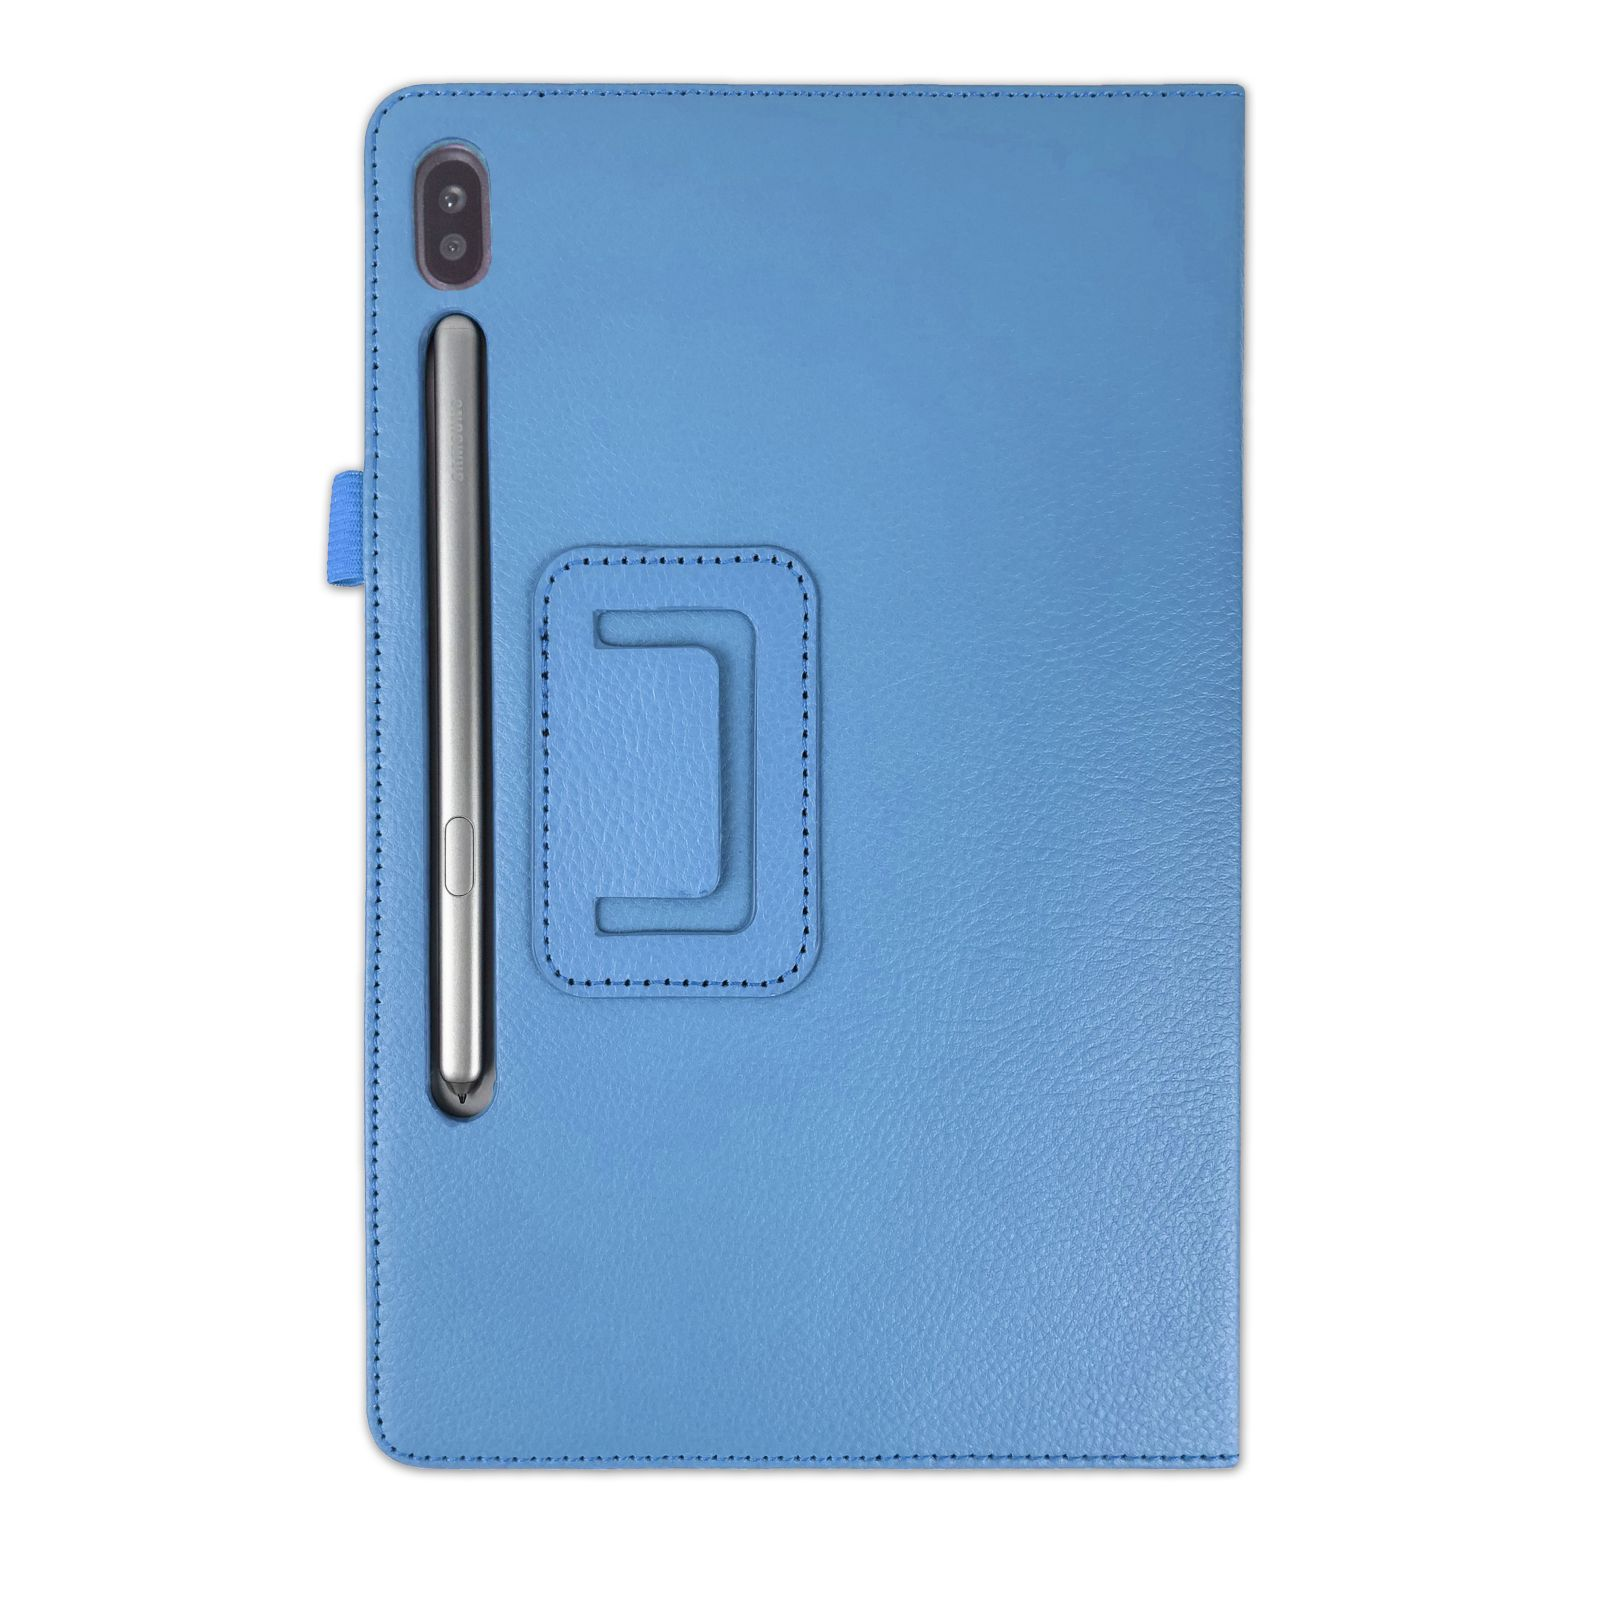 LOBWERK Hülle Schutzhülle Bookcover Galaxy Hellblau S6 Tab 10.5 Zoll für SM-T860 Samsung Kunstleder